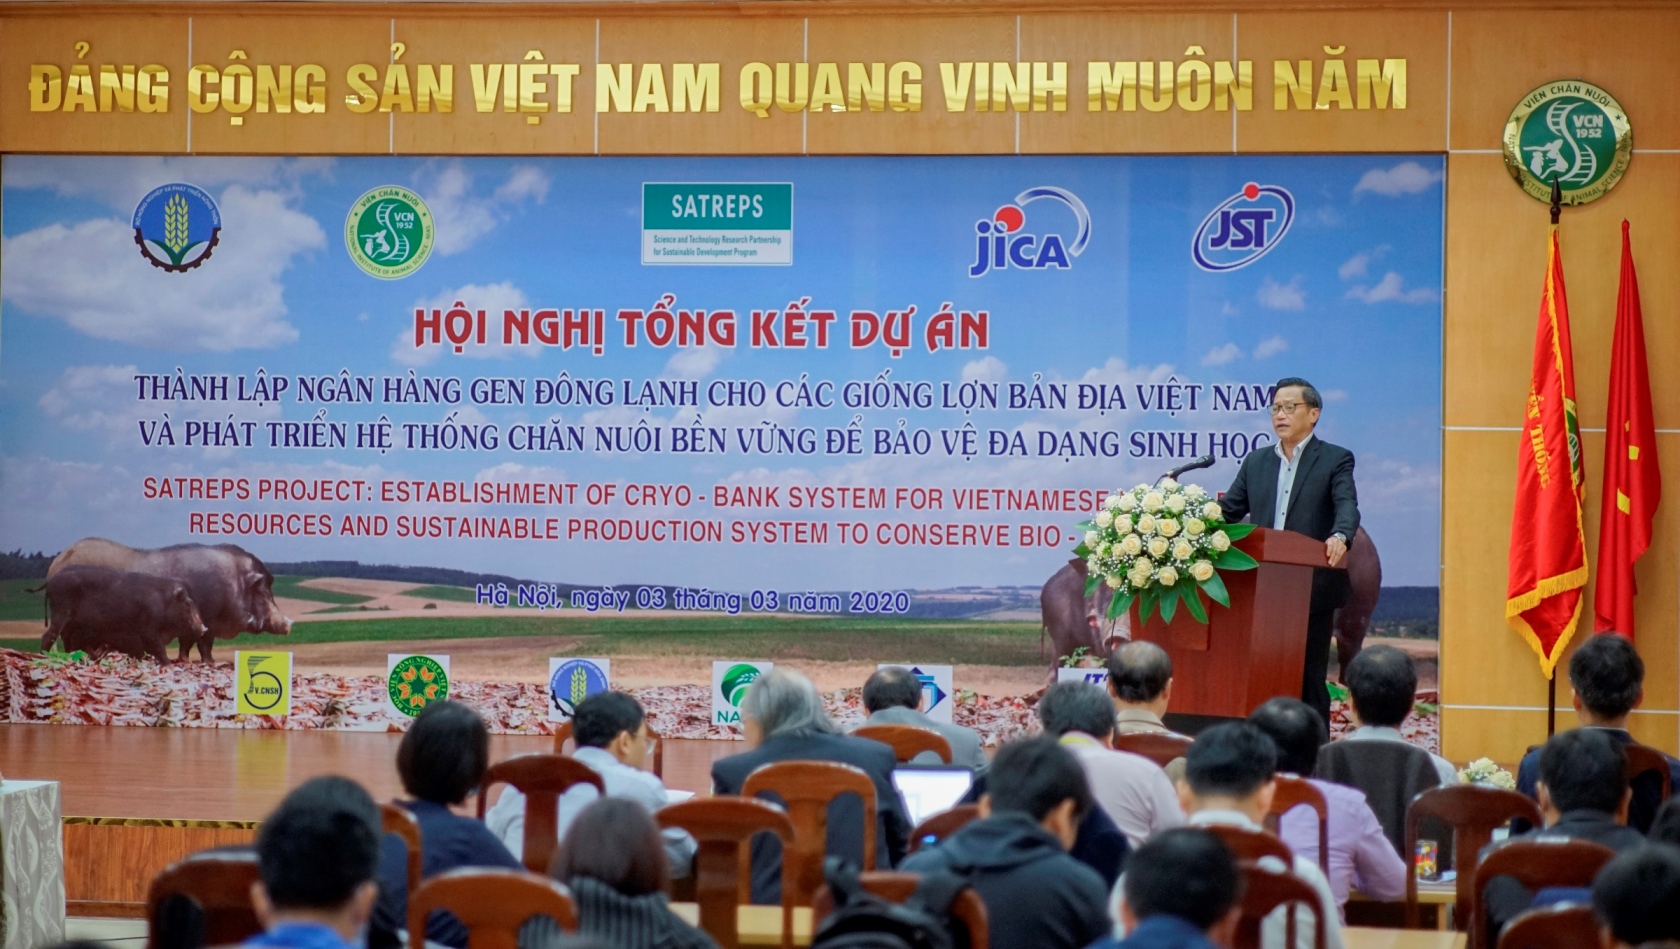 Hội nghị tổng kết Dự án SATREPS “Thành lập hệ thống ngân hàng gien đông lạnh cho các giống lợn bản địa Việt Nam và phát triển hệ thống chăn nuôi bền vững để bảo vệ đa dạng sinh học”